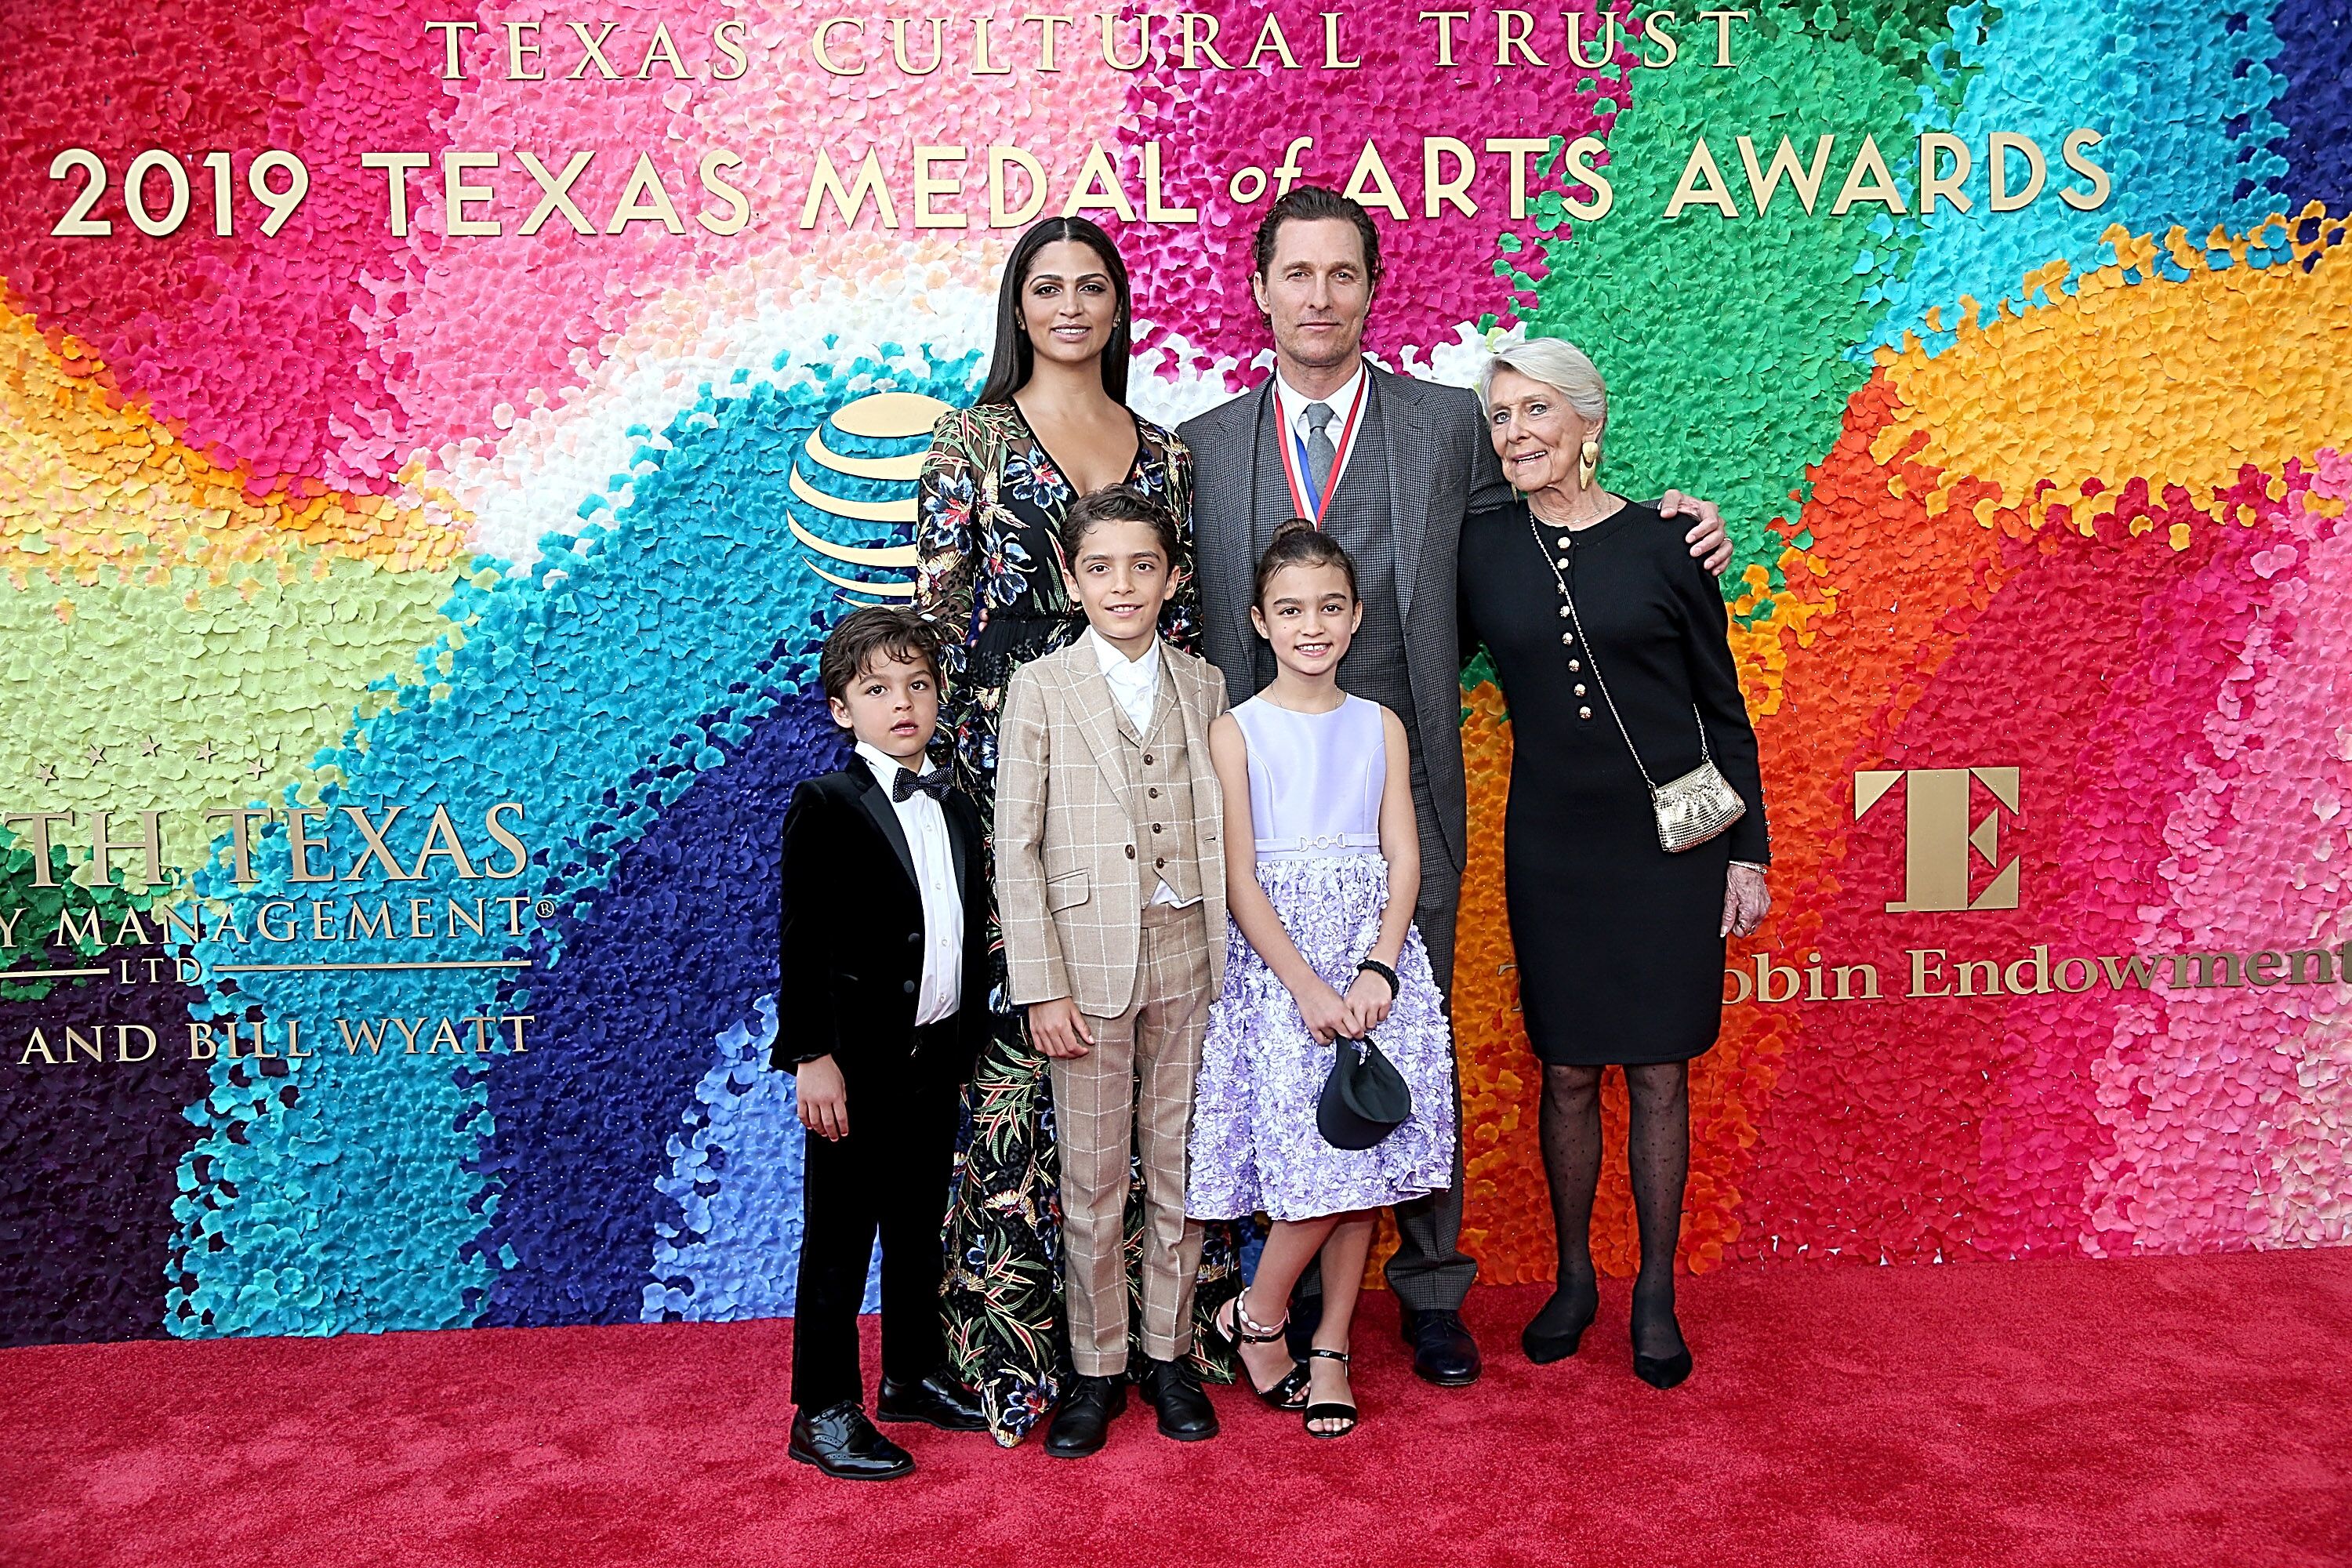 Matthew McConaughey, sa femme Camila Alves, sa mère Kay et ses enfants lors d'une cérémonie | Source : Getty Images